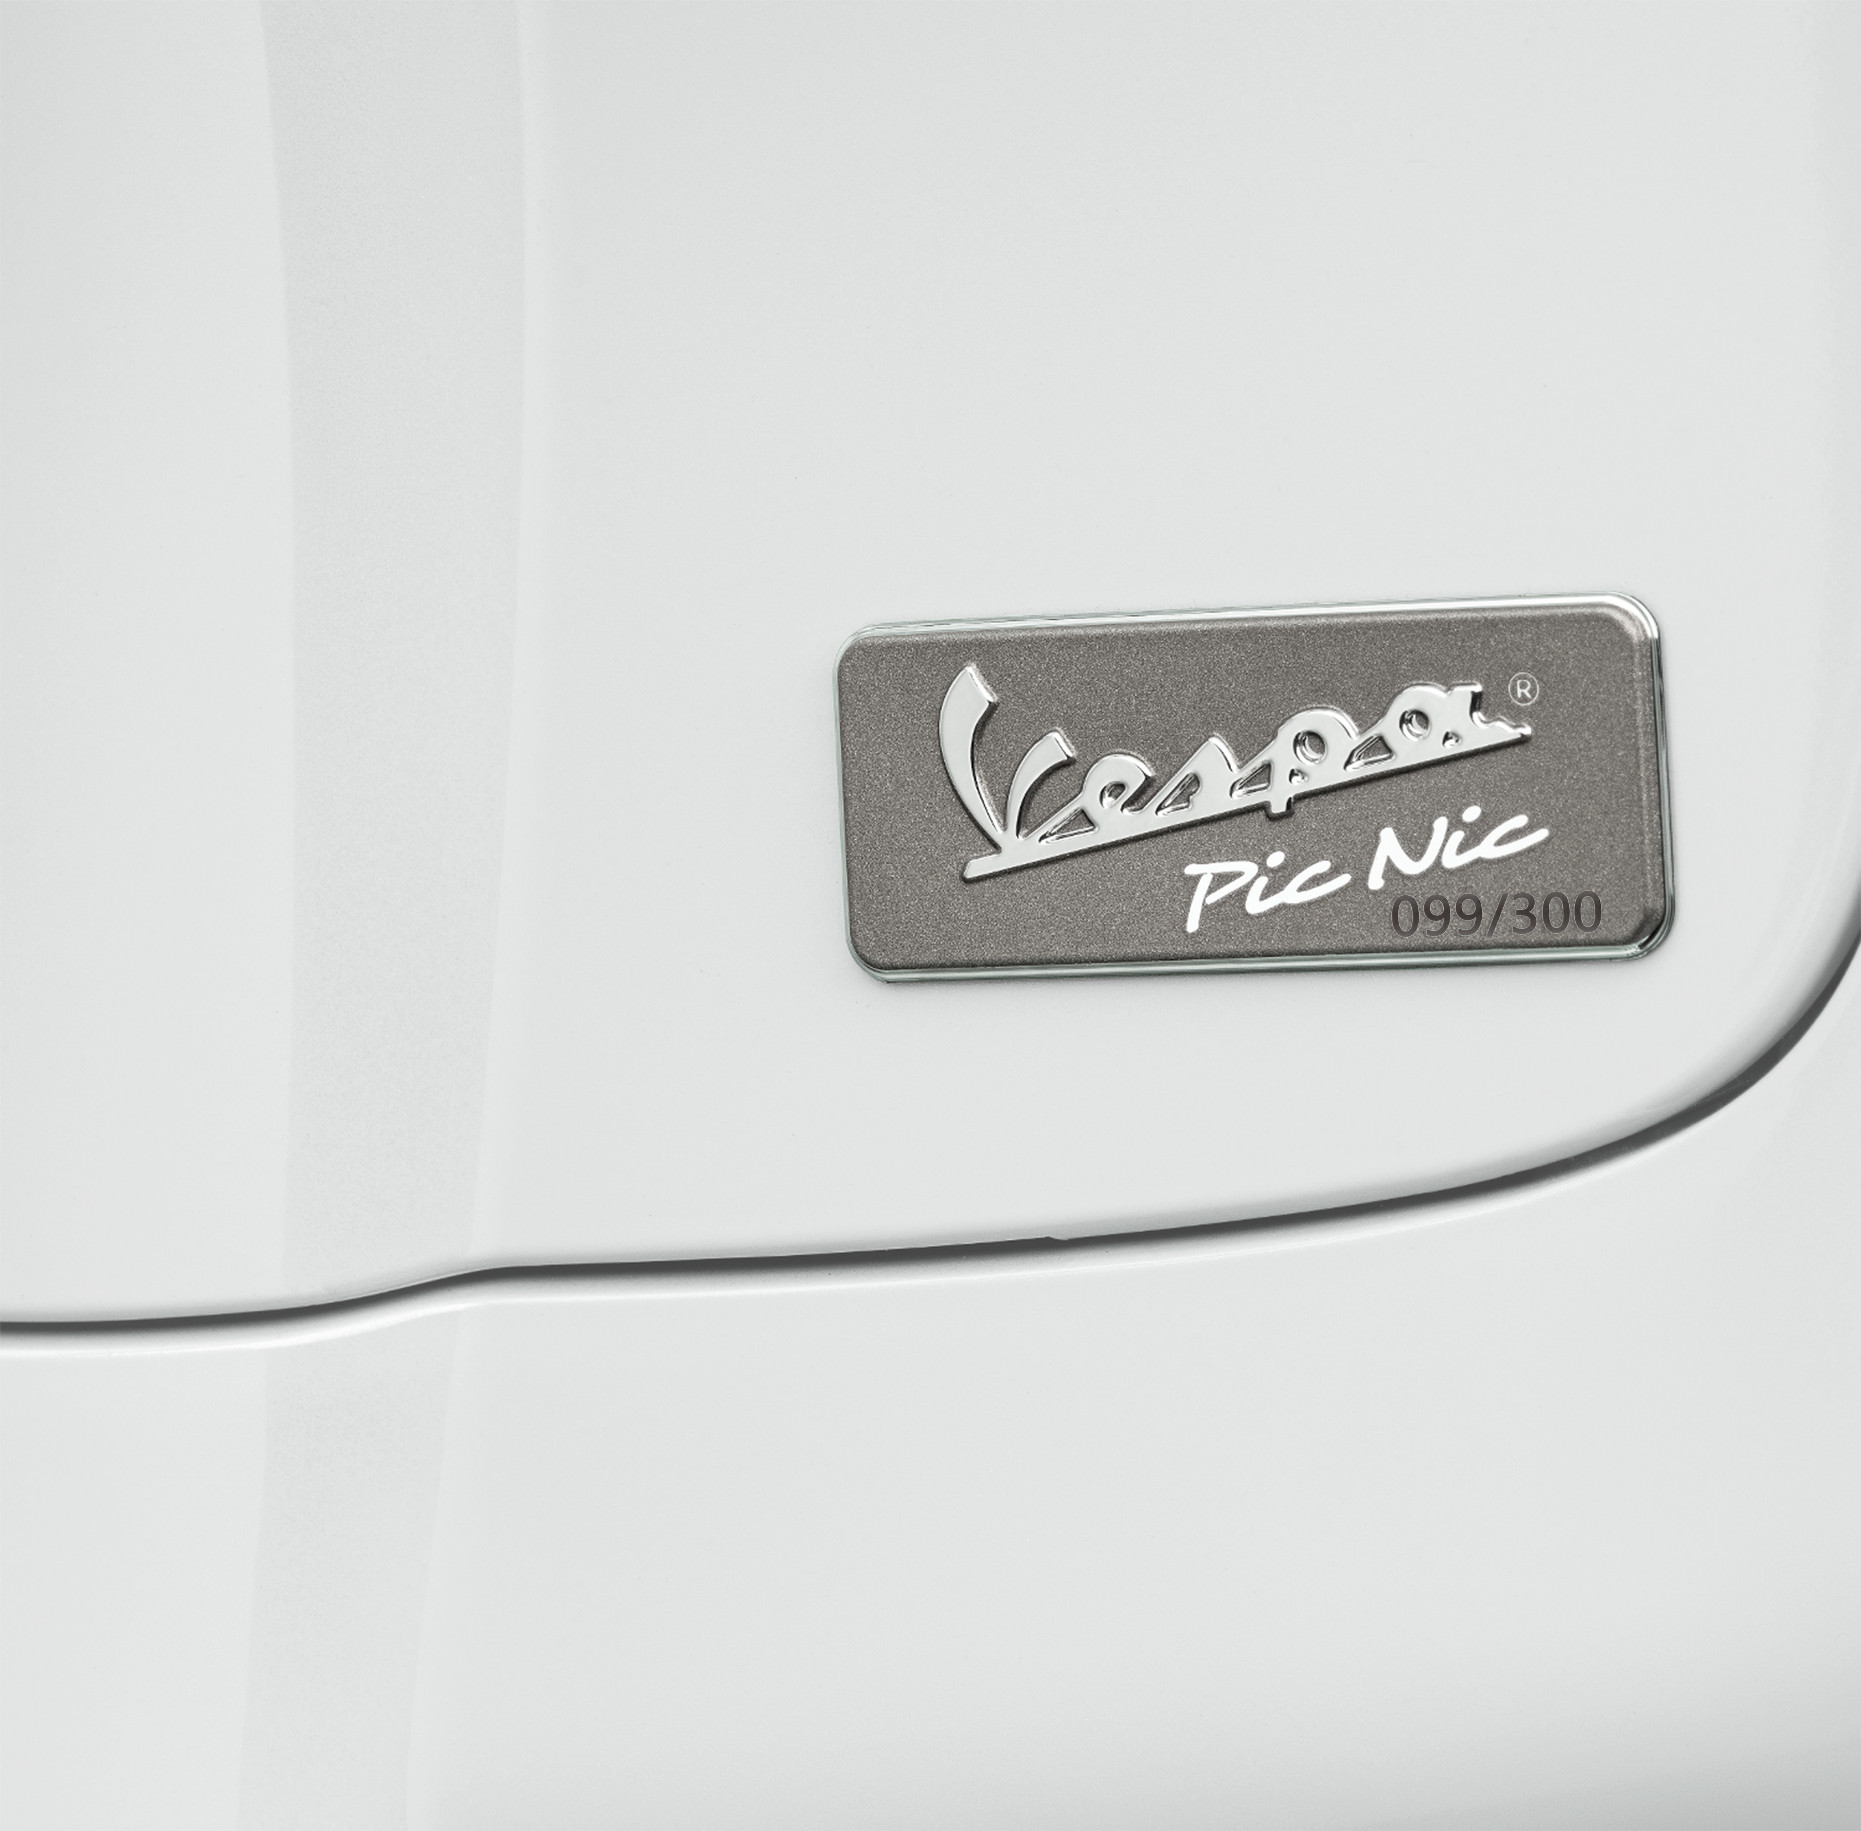 Vespa Picnic ra mắt tại Việt Nam, giới hạn chỉ 300 chiếc giá 88 triệu logo-limited-edition.jpg